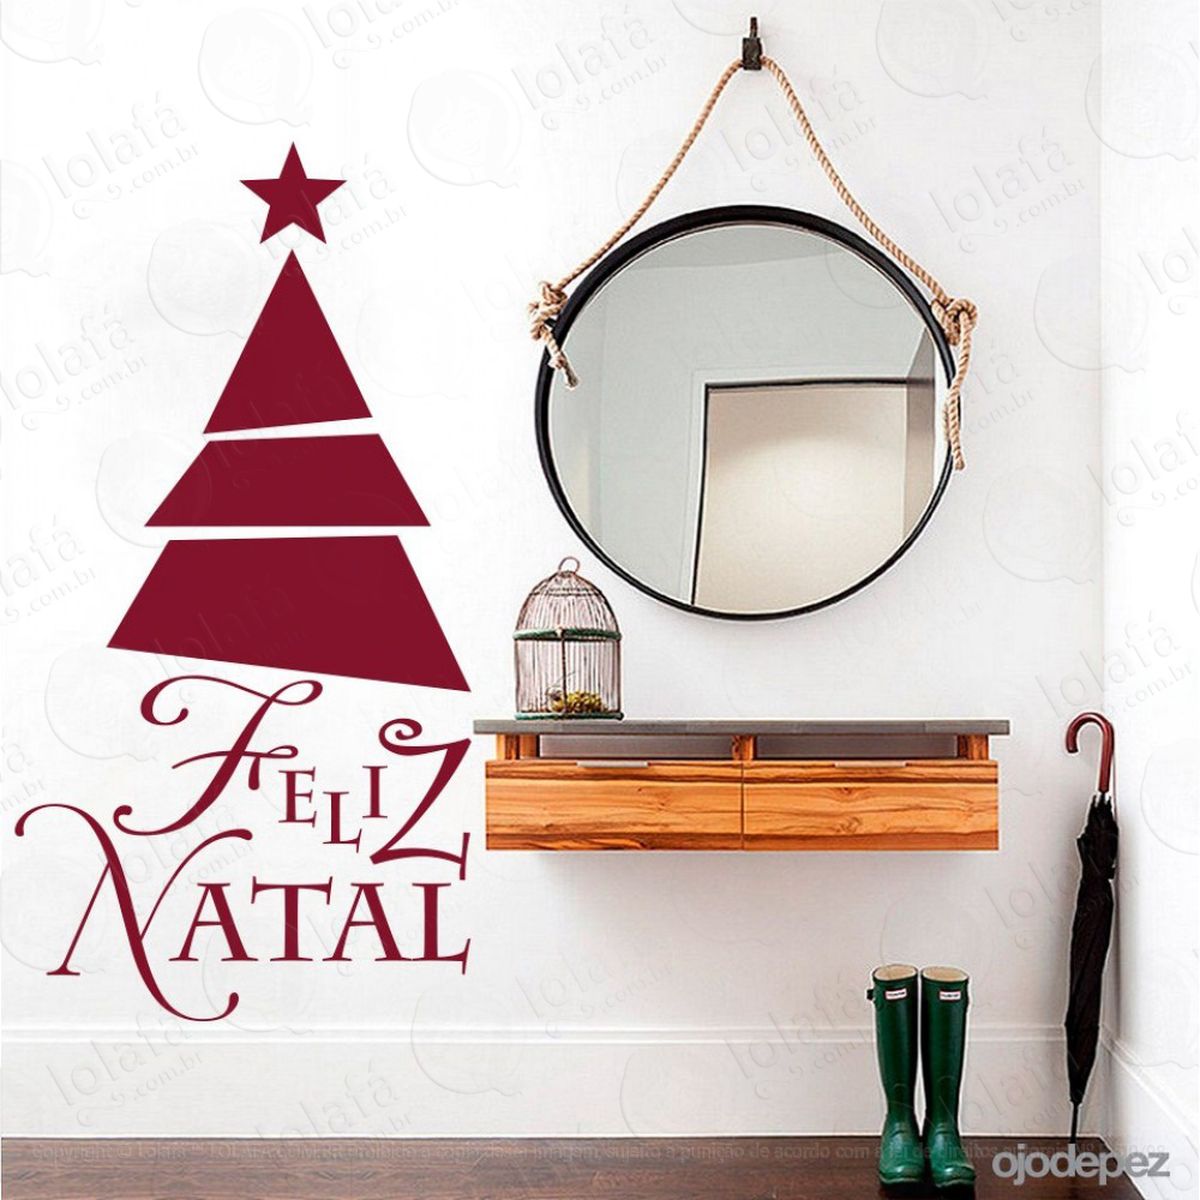 Árvore adesivo de natal para vitrine, parede, porta de vidro - decoração natalina mod:341